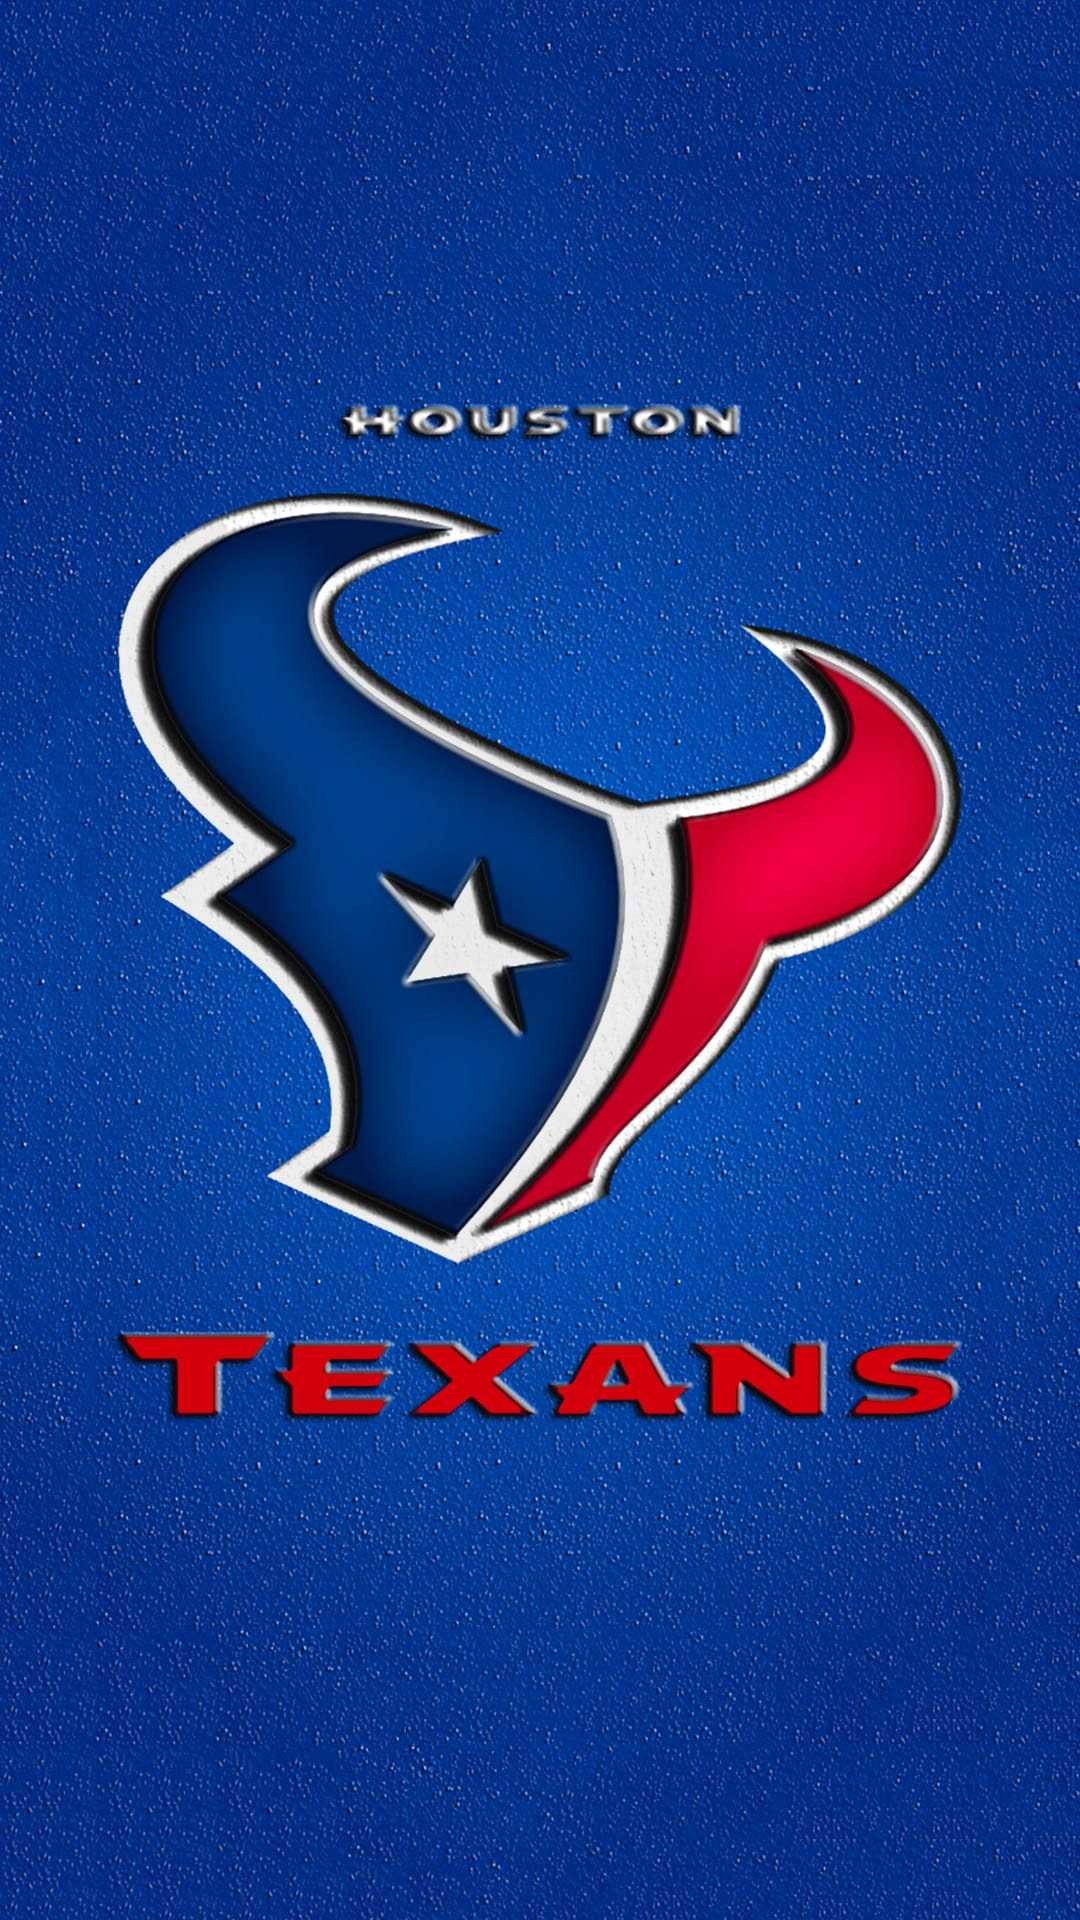 Texans Wallpaper - iXpap